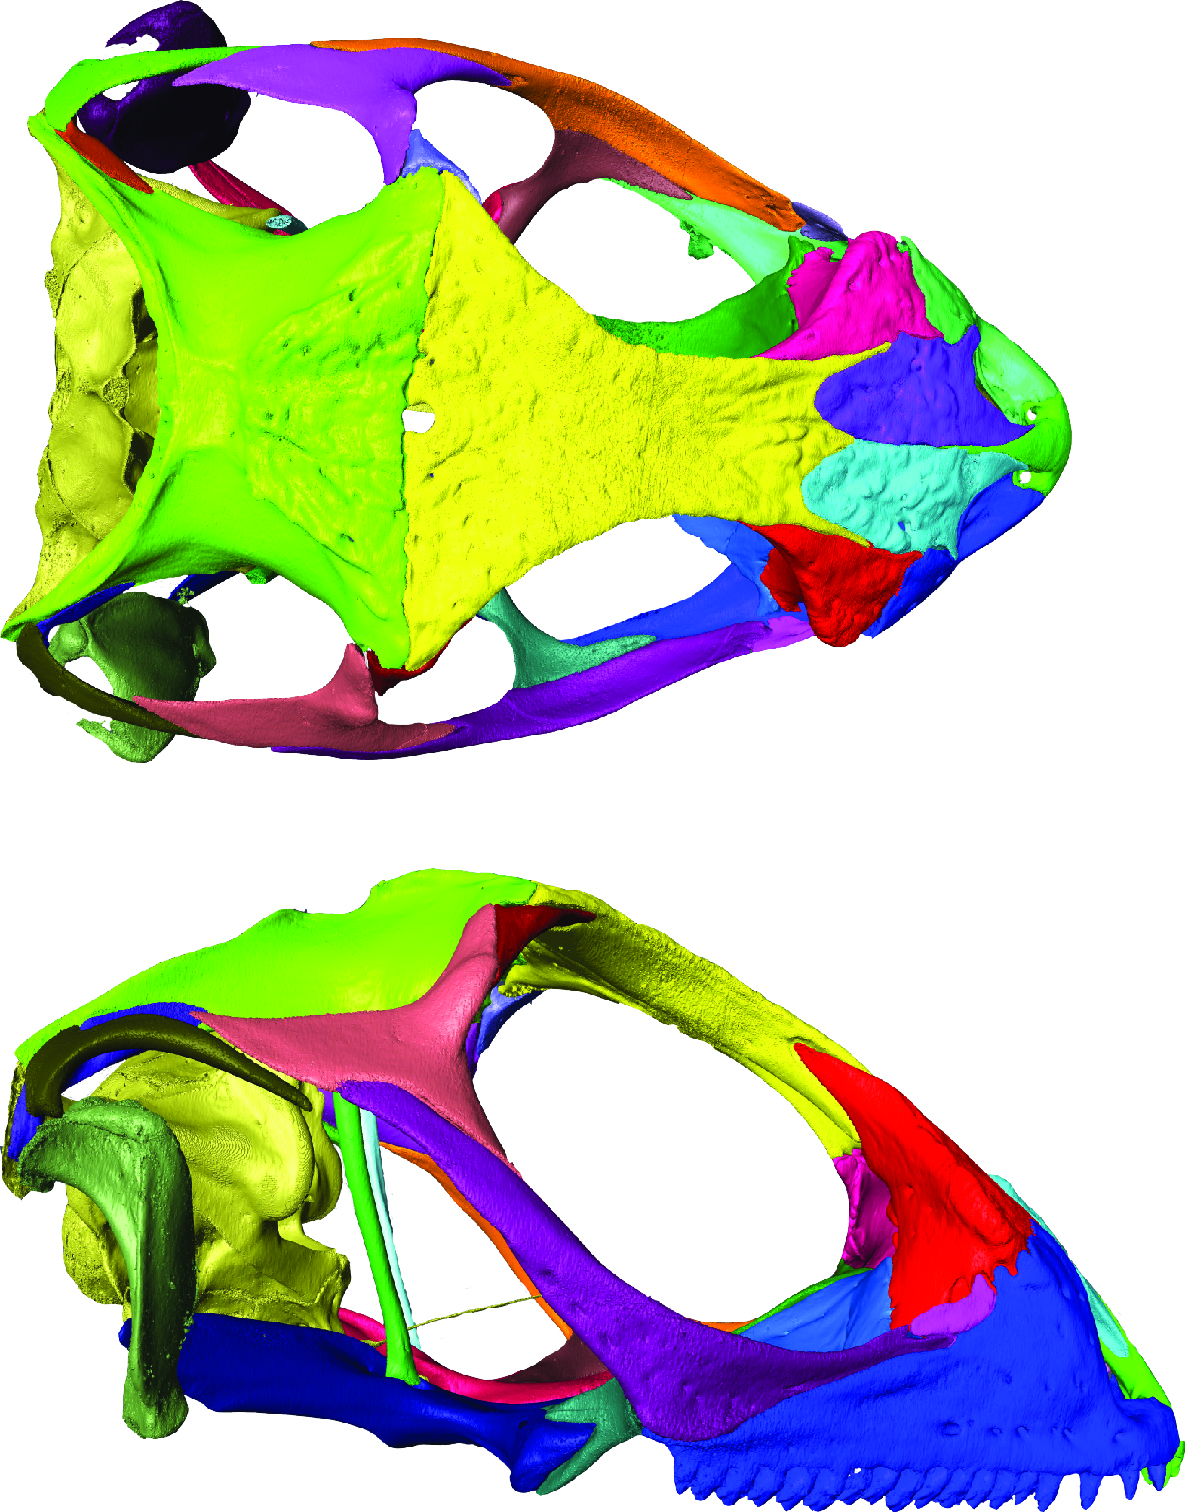 crâne du Léiocéphale du Muséum de Bordeaux modélisée 3D grâce aux techniques d’imagerie. L’observation de la morphologie squelettique à permis de comparer ce spécimen aux ossements fossiles découverts en Guadeloupe sans endommager le spécimen historique.